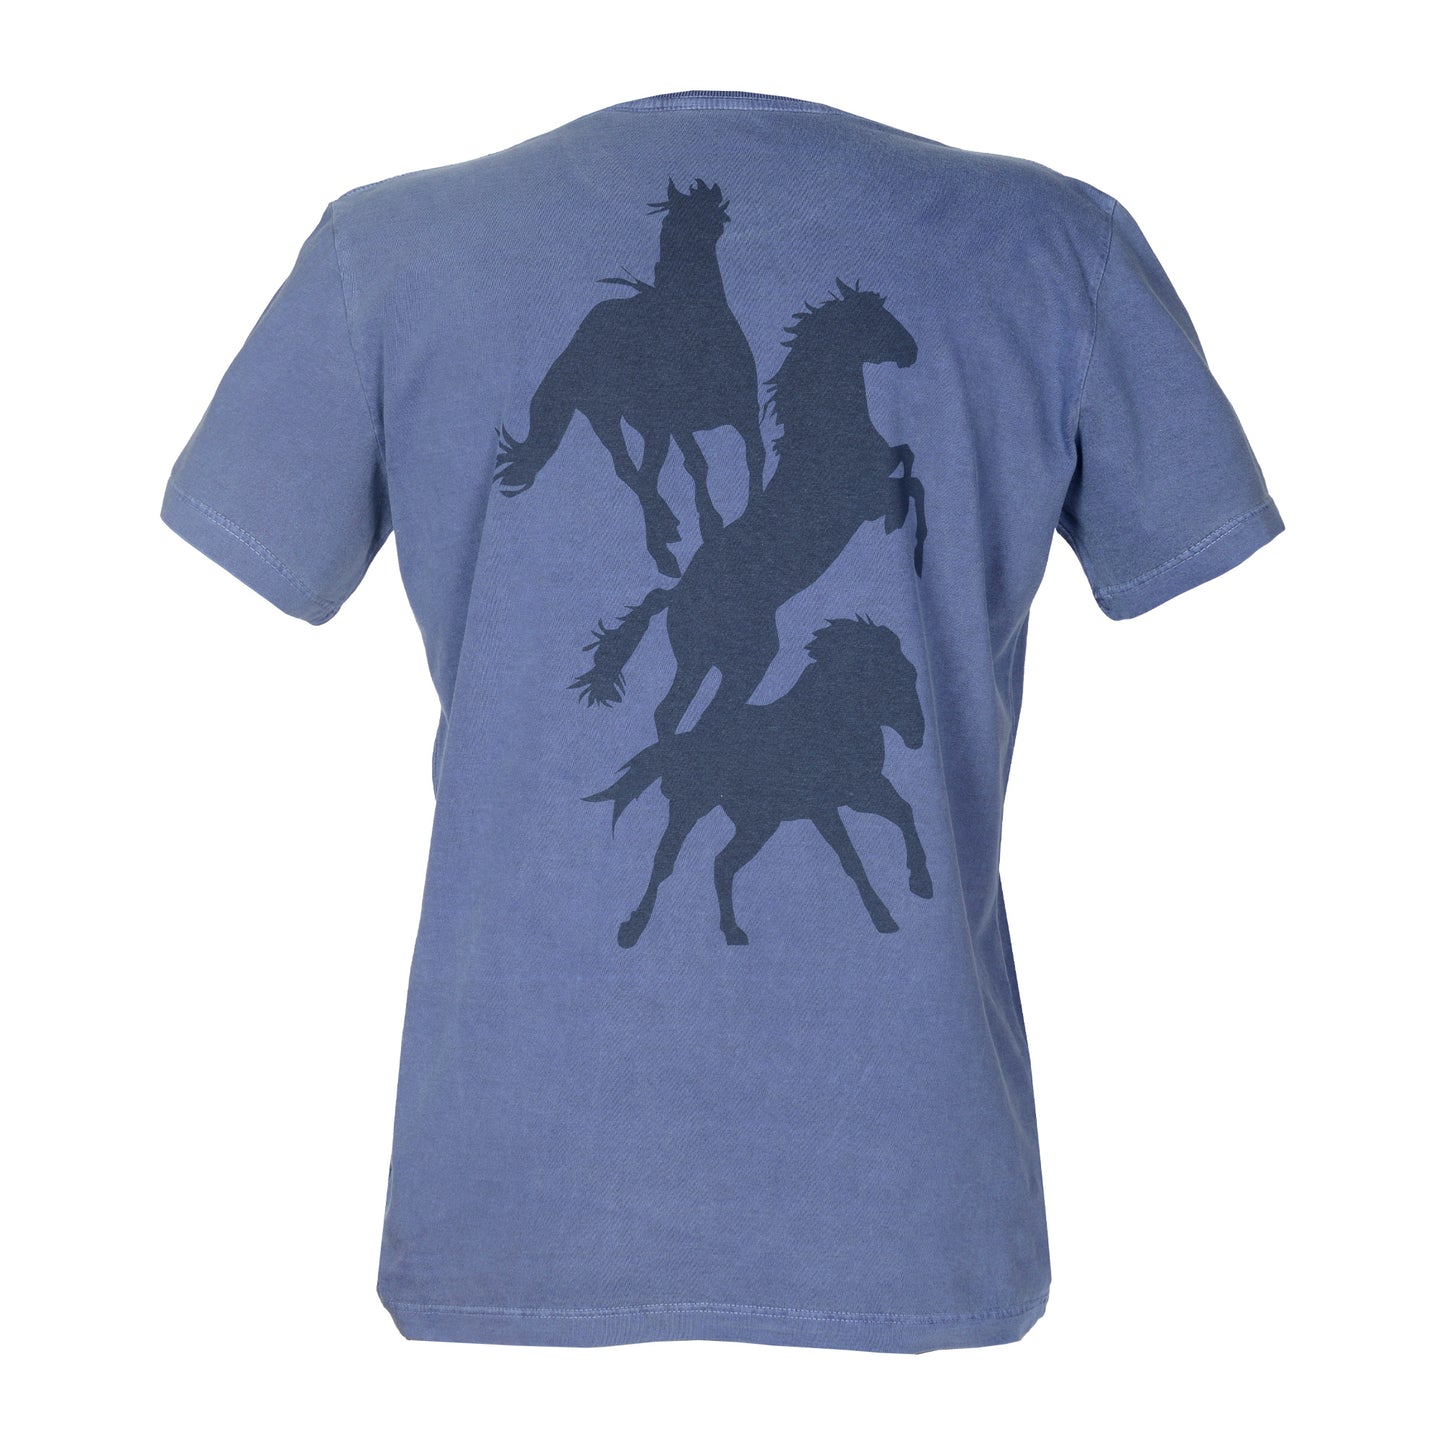 Men's T-Shirt Three Horses